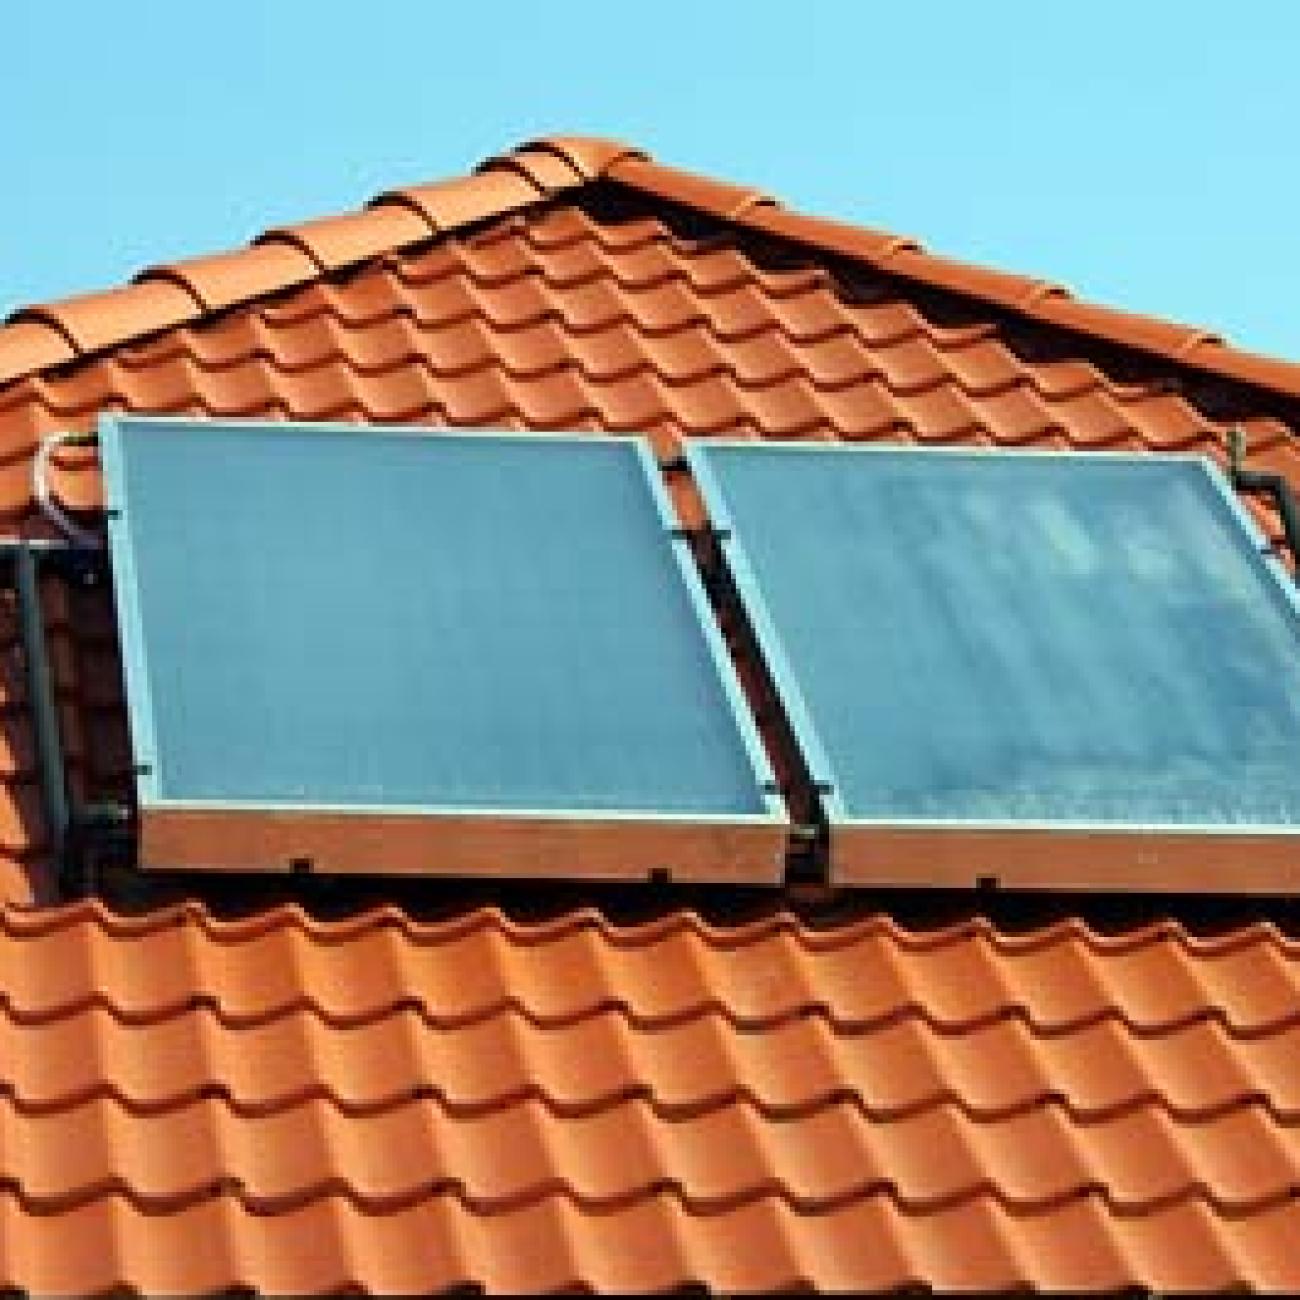 Installazione pannelli solari in un'abitazione 